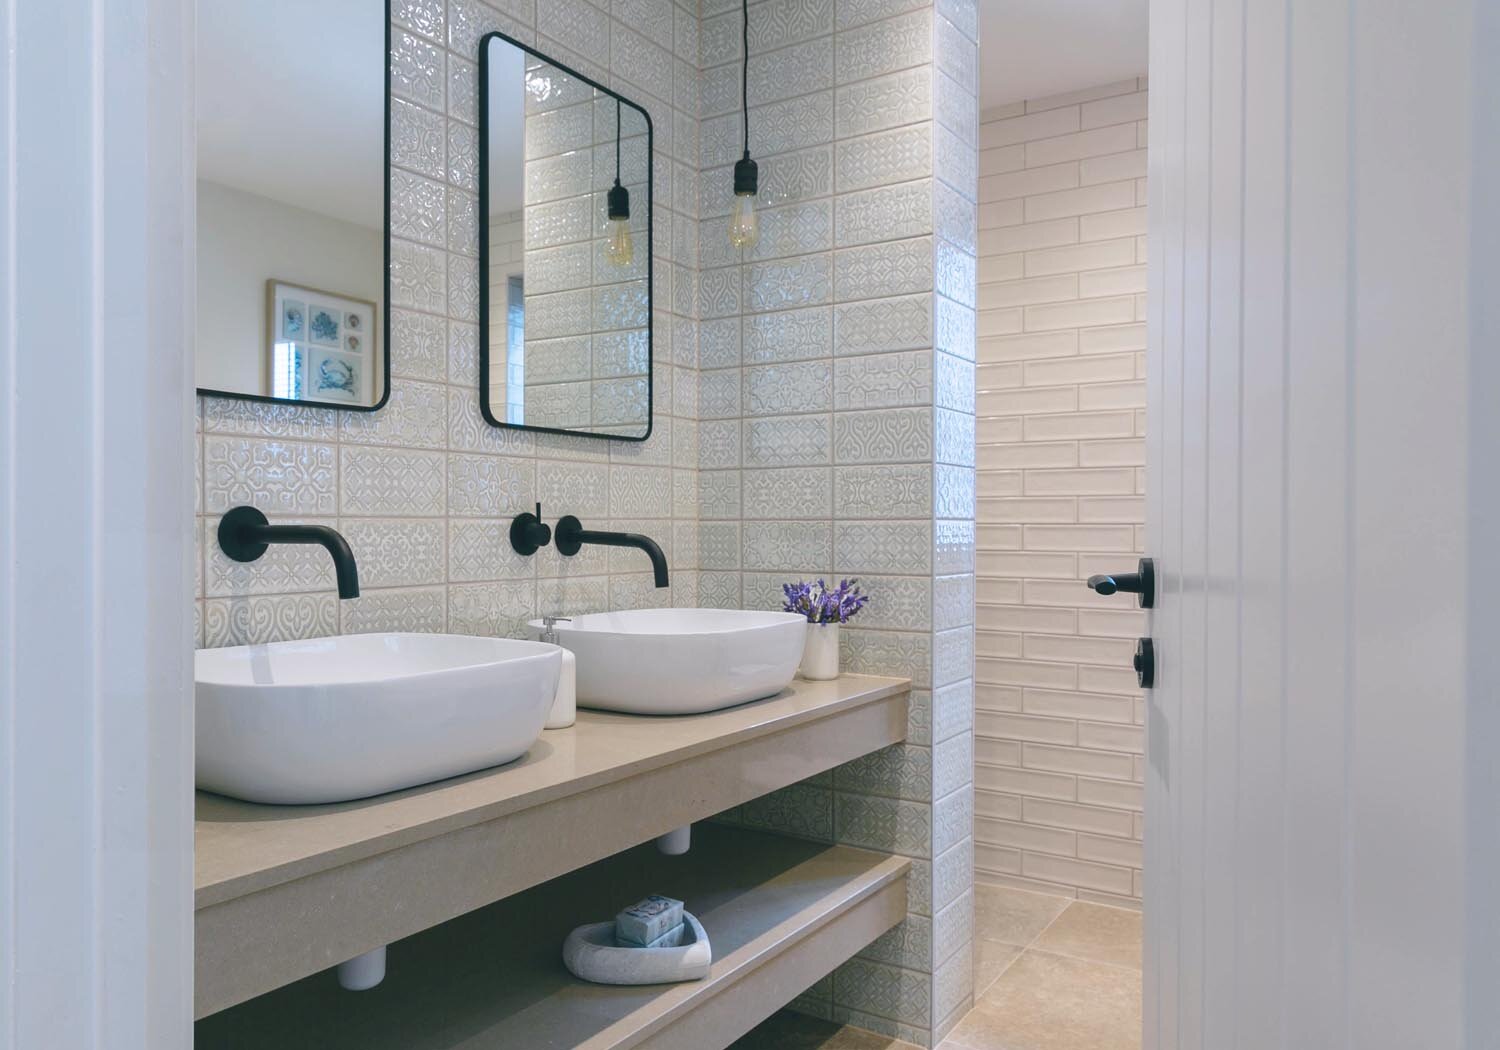 Bayview rental cottage, Gower - luxury bathroom